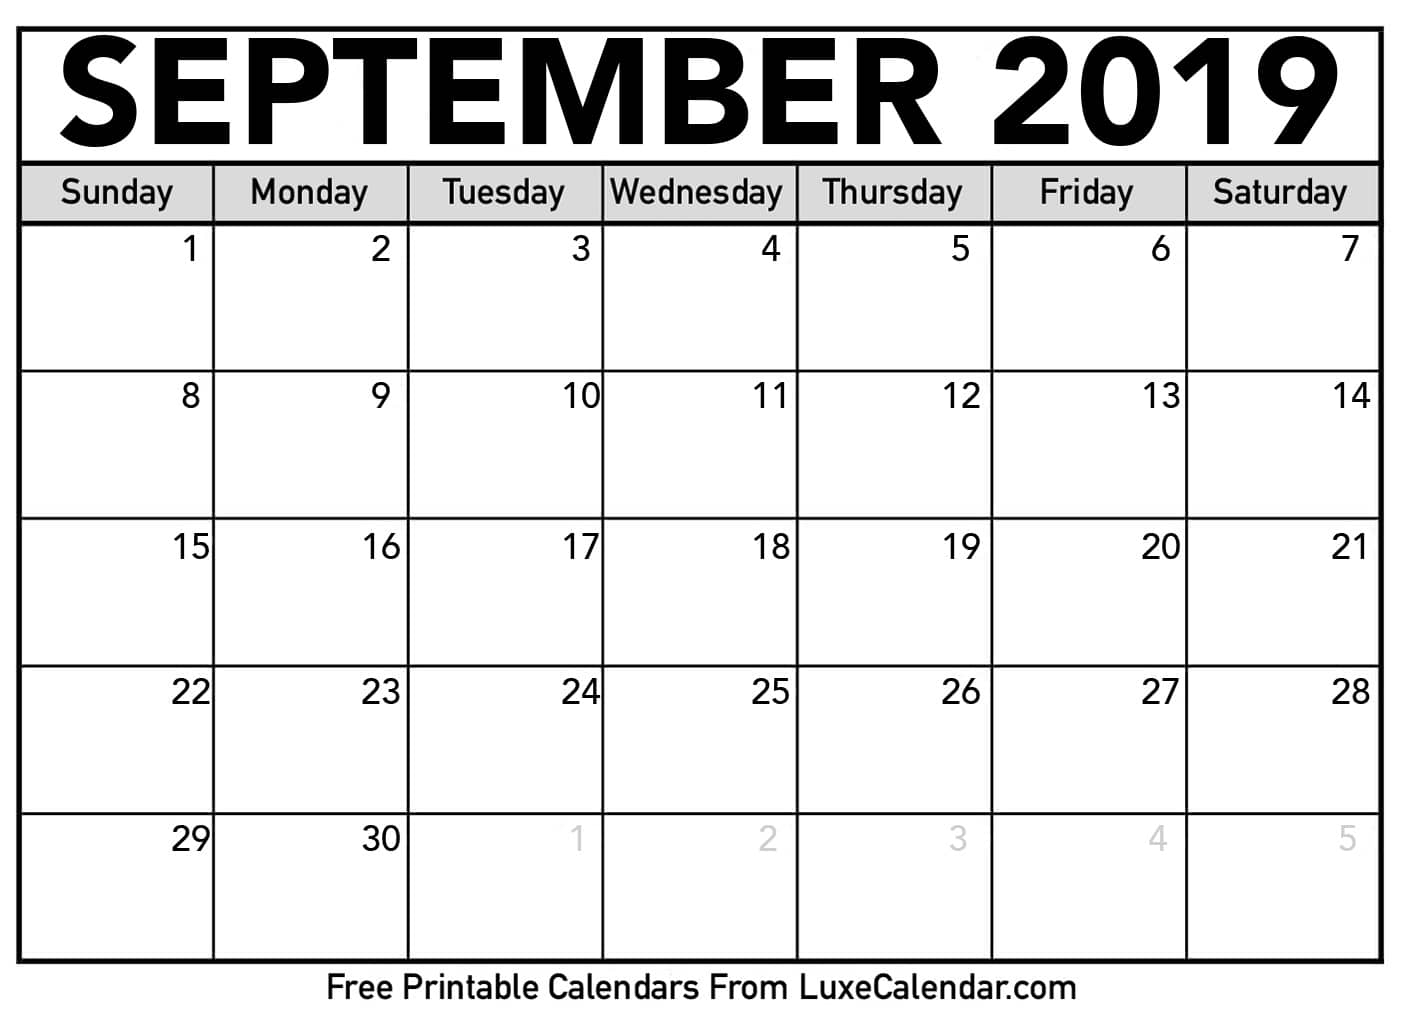 Blank September 2019 Calendar Printable - Luxe Calendar